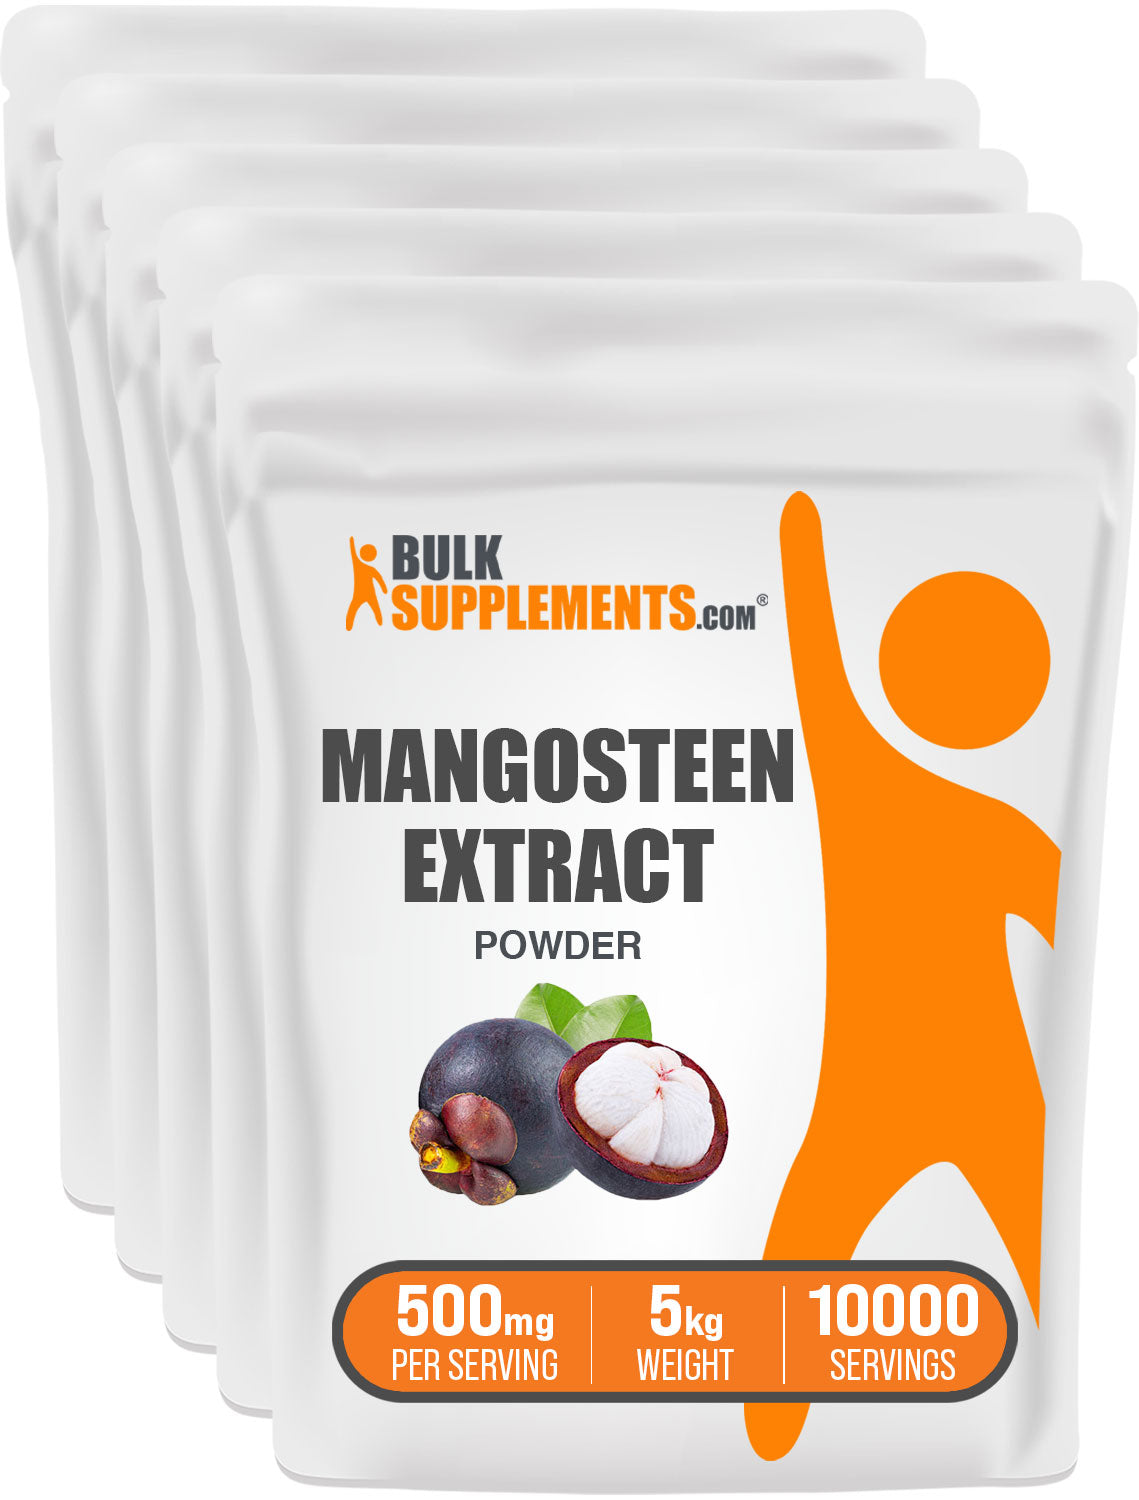 BulkSupplements Mangosteen Extract Powder 5kg bags